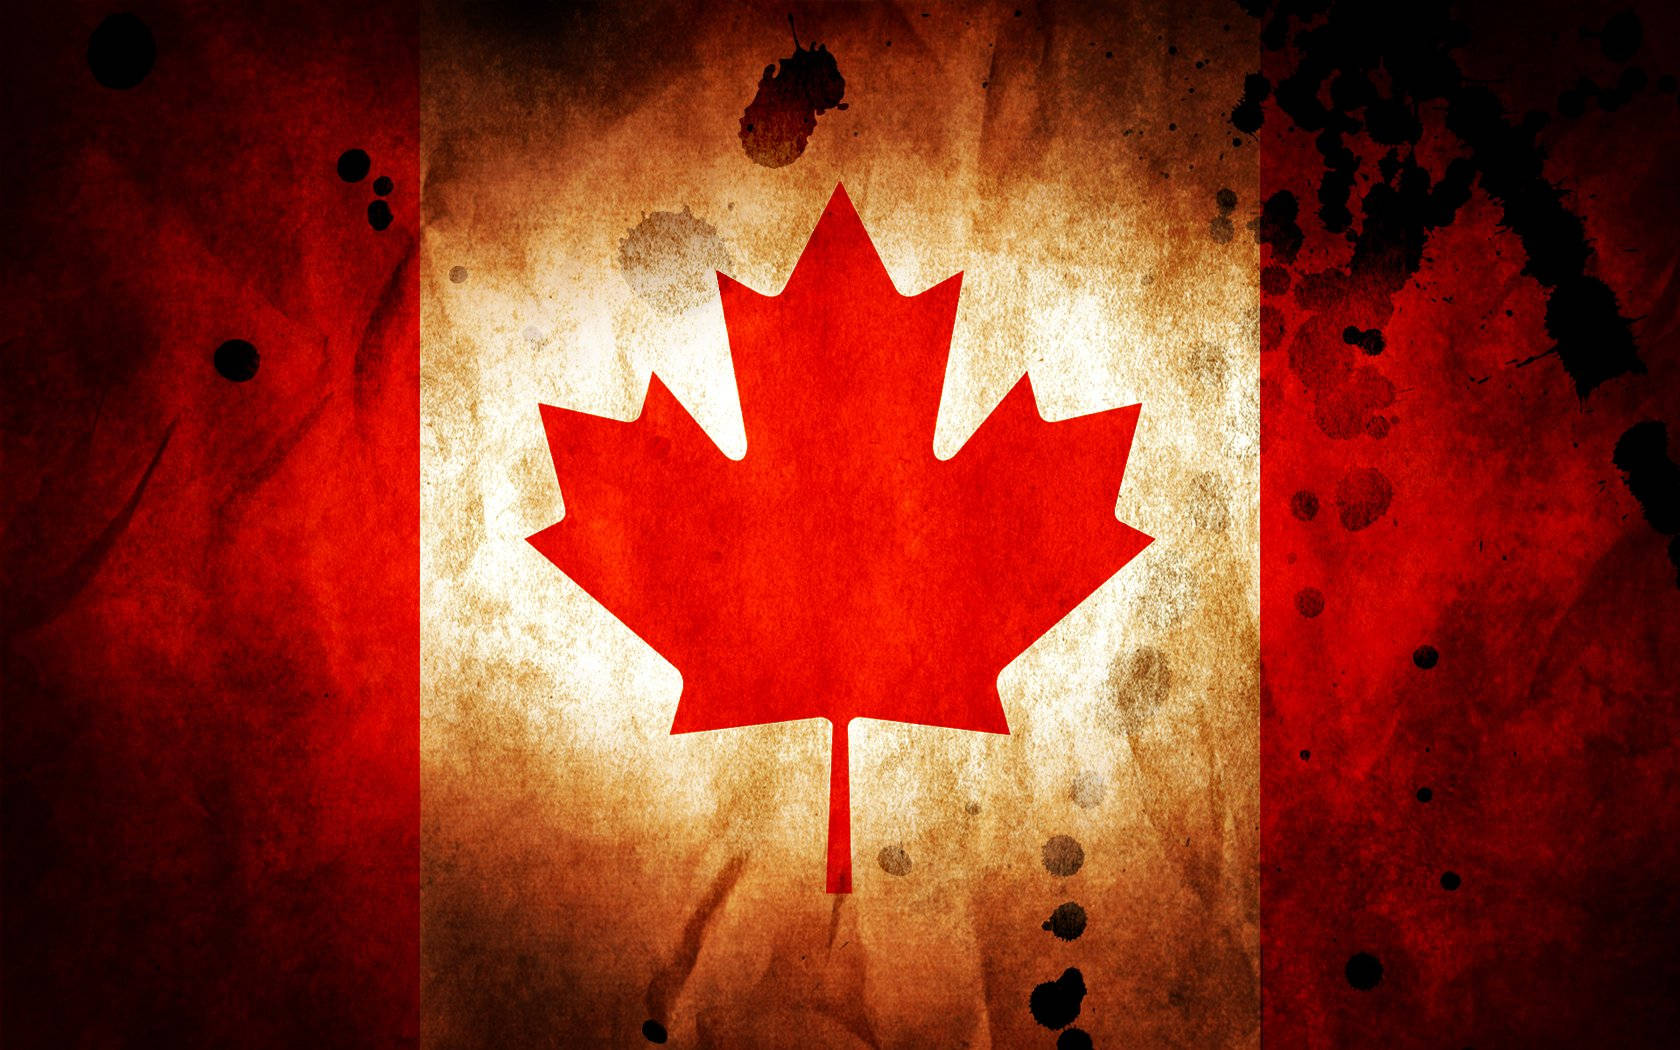 Vibrant Artistic Interpretation of the Canadian Flag Wallpaper